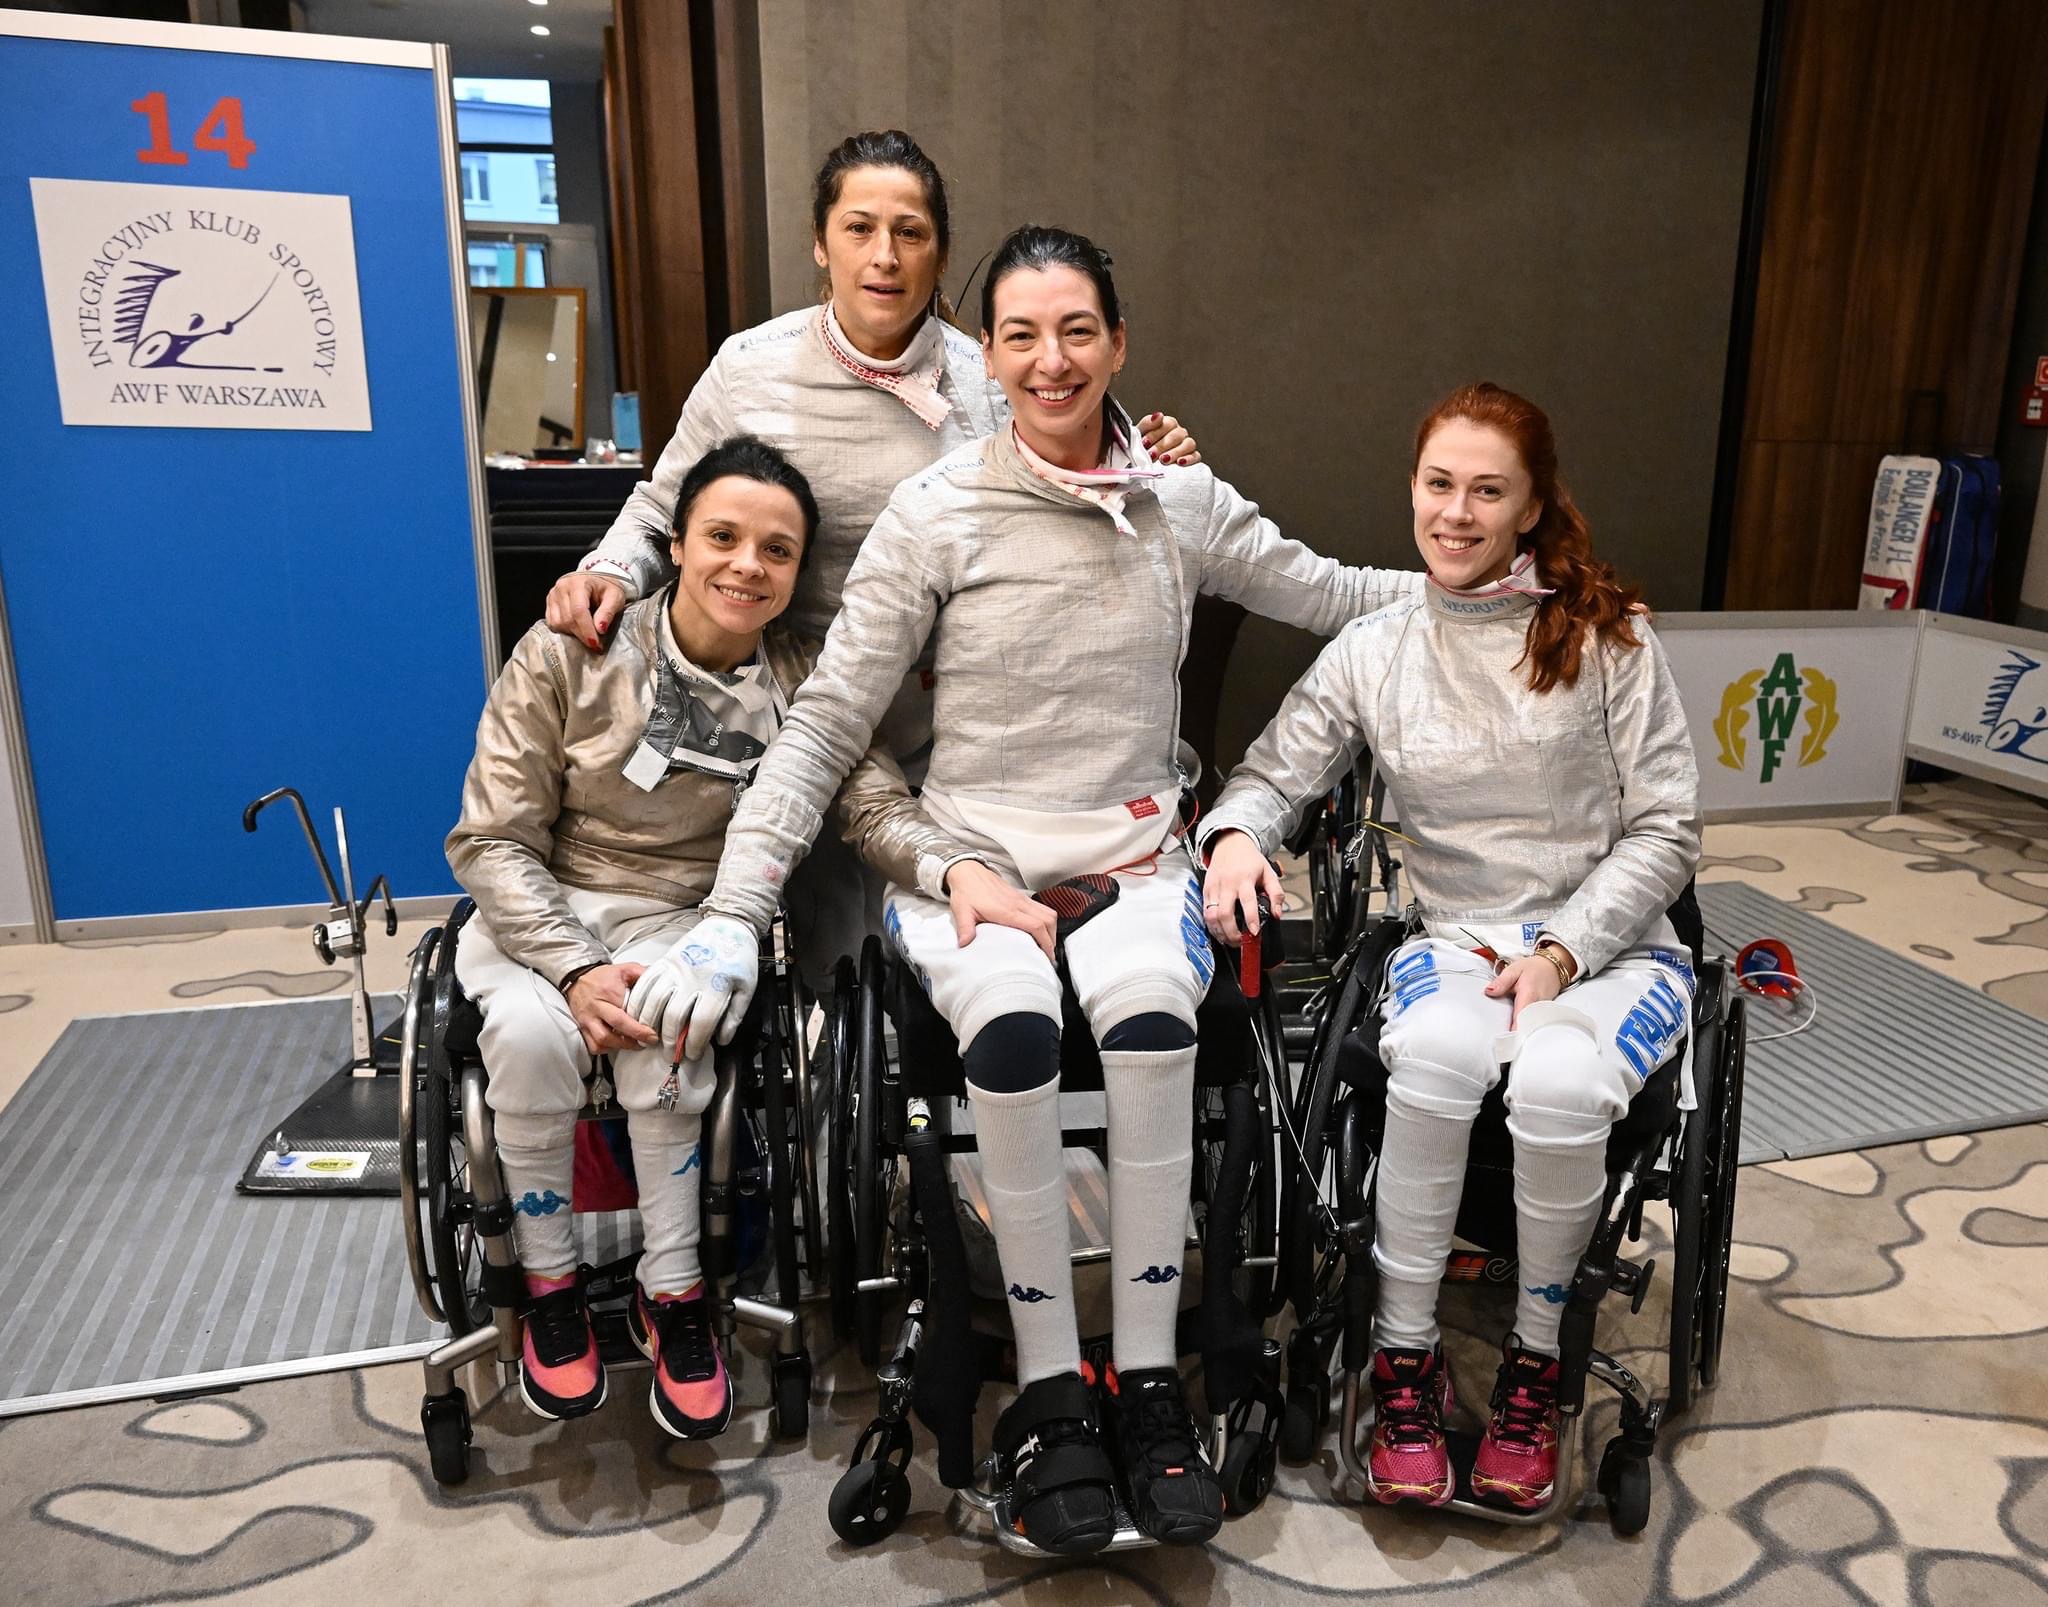 Scherma paralimpica, seconda medaglia europea per la sannita Pasquino: bronzo nella gara a squadre